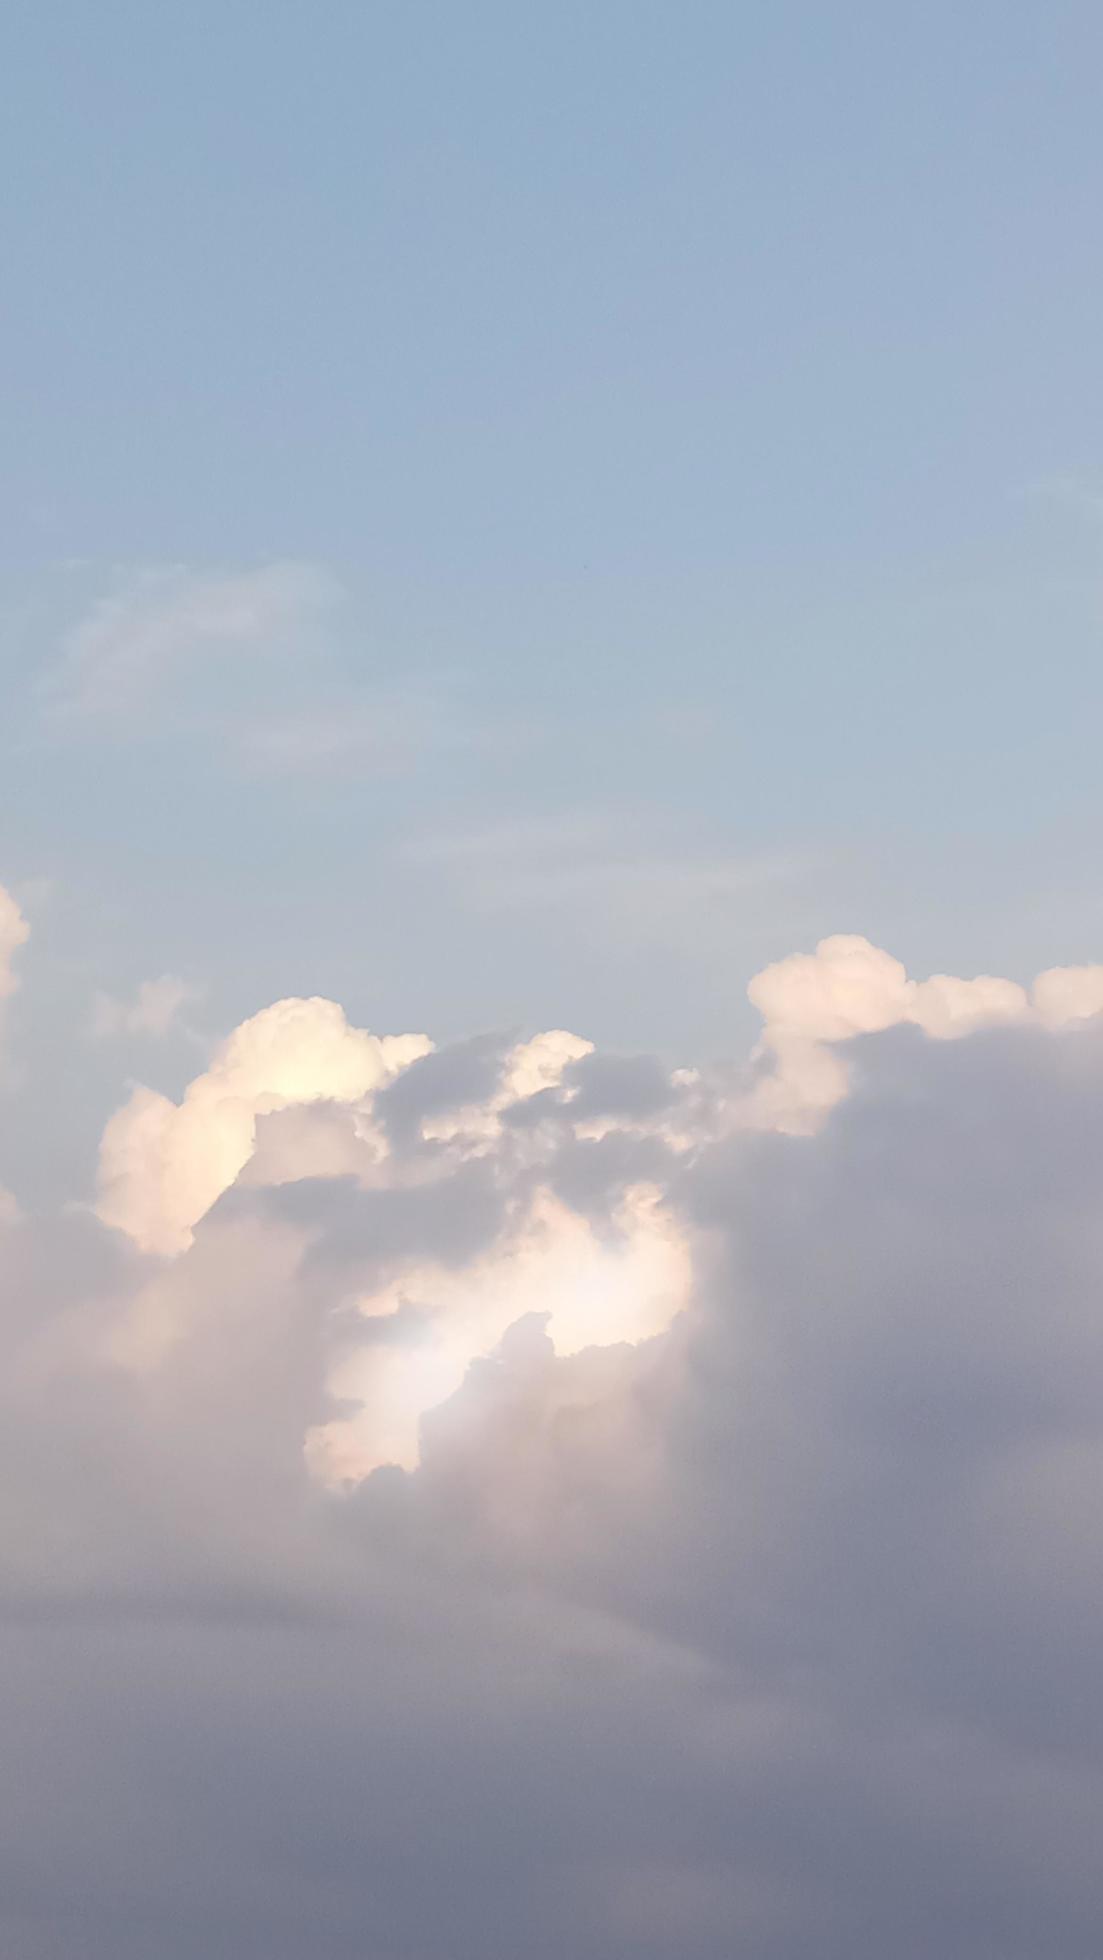  Himmel Hintergrundbild 1103x1960. Blauer Himmel Mit Wolkenhintergrund Natur, Vertikal 7259330 Stock Photo Bei Vecteezy